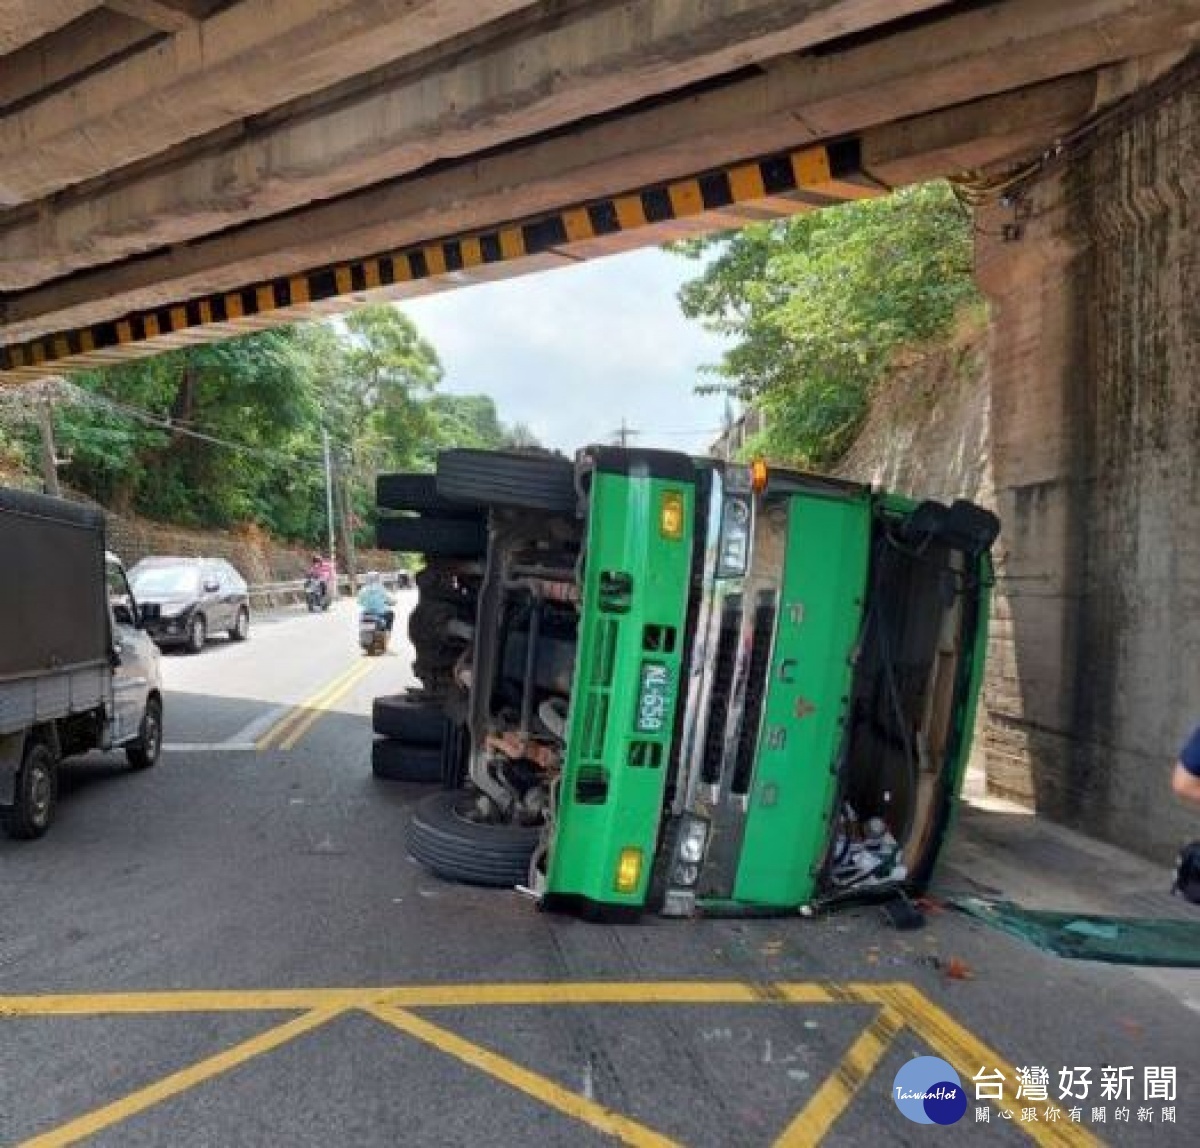 楊梅區楊新路縱貫線鐵道橋下涵洞又傳出貨櫃聯結車翻覆事件。